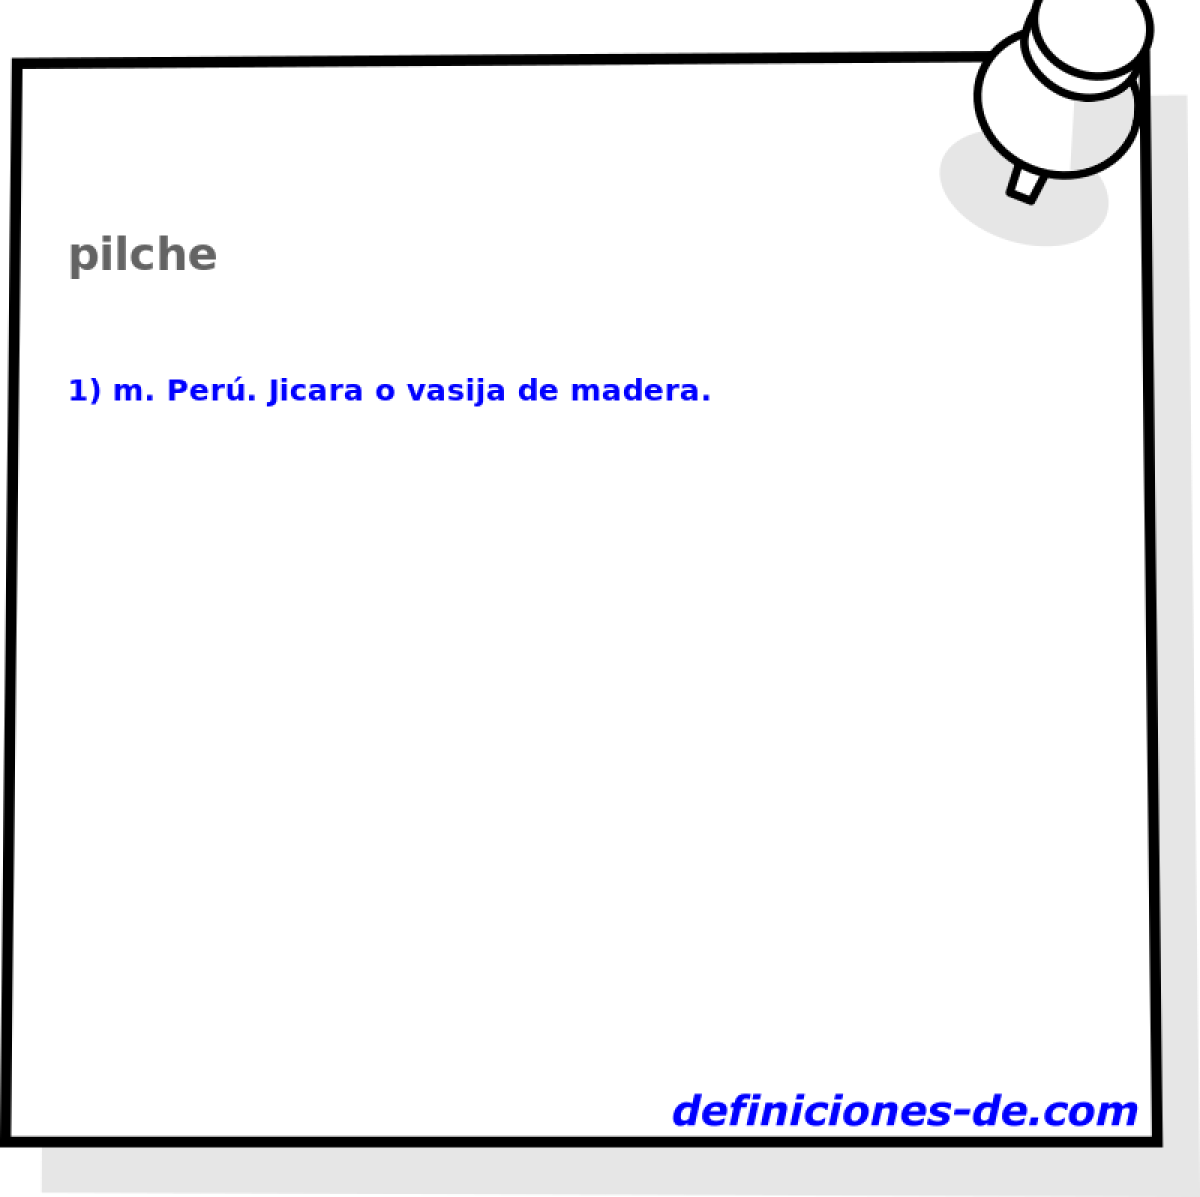 pilche 